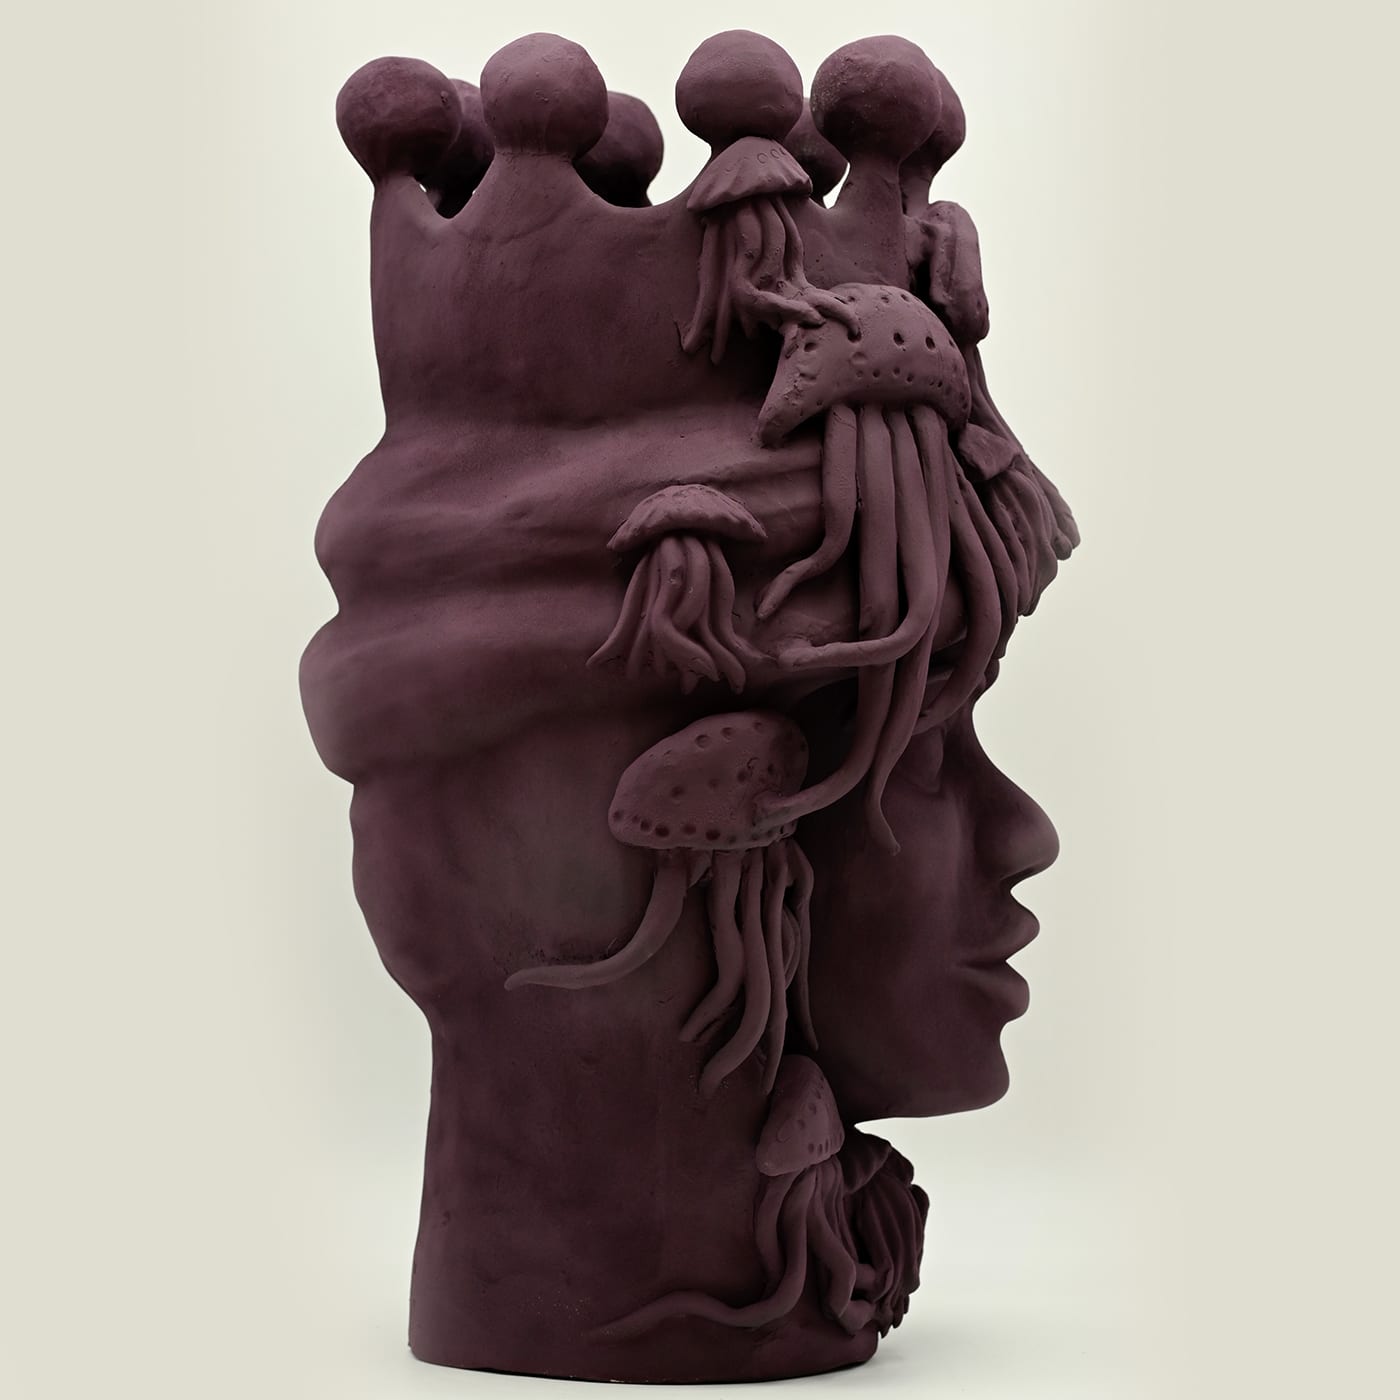 Handmade Moor's Head Sculpture